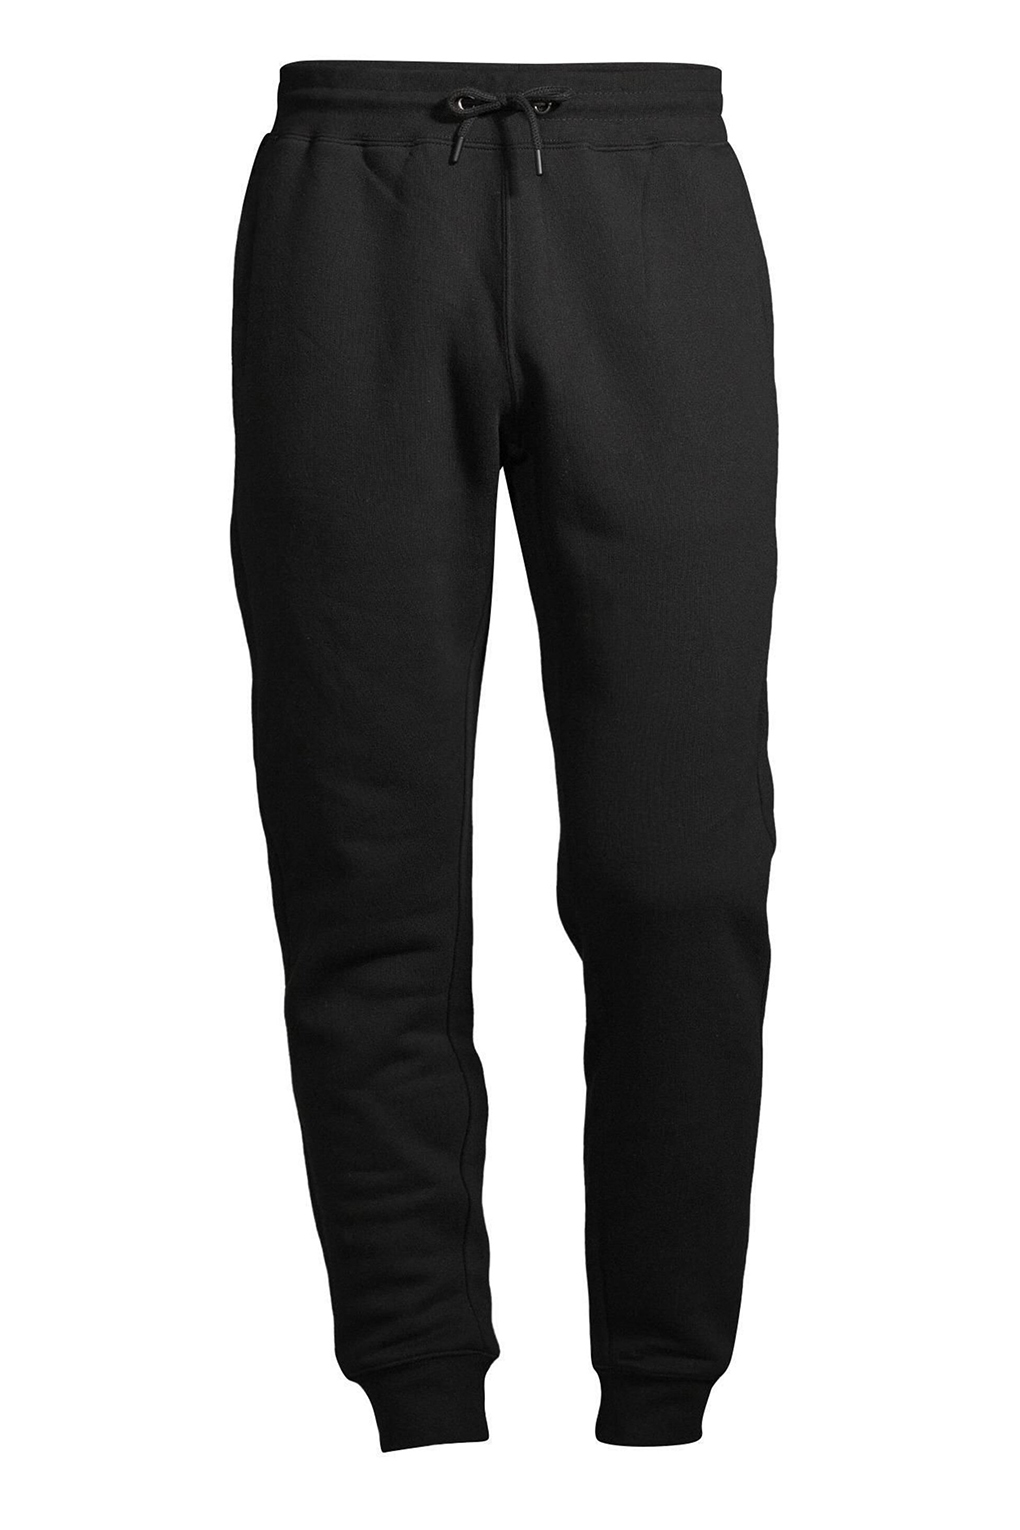 Спортивные брюки мужские Construe 2110 DEAN черные XS